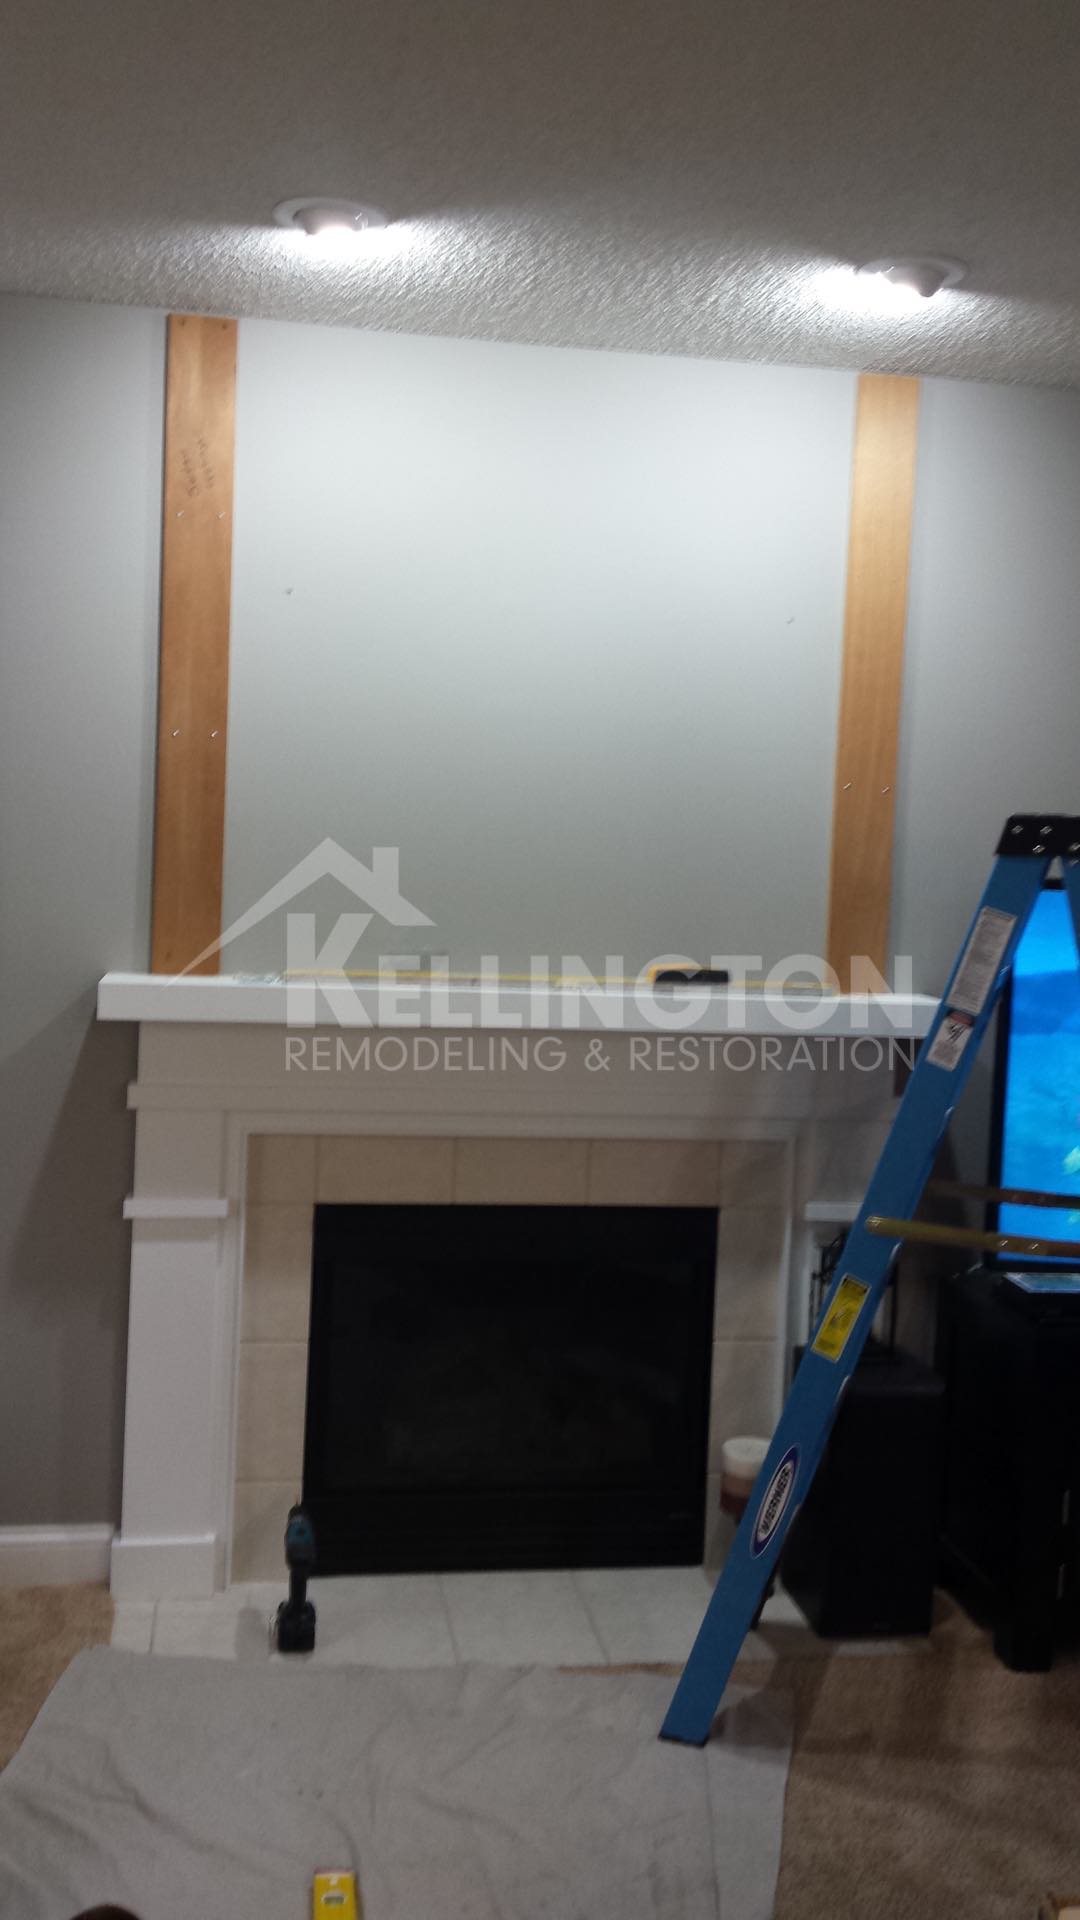 Fireplace renovation by Kellington restoration and remodeling